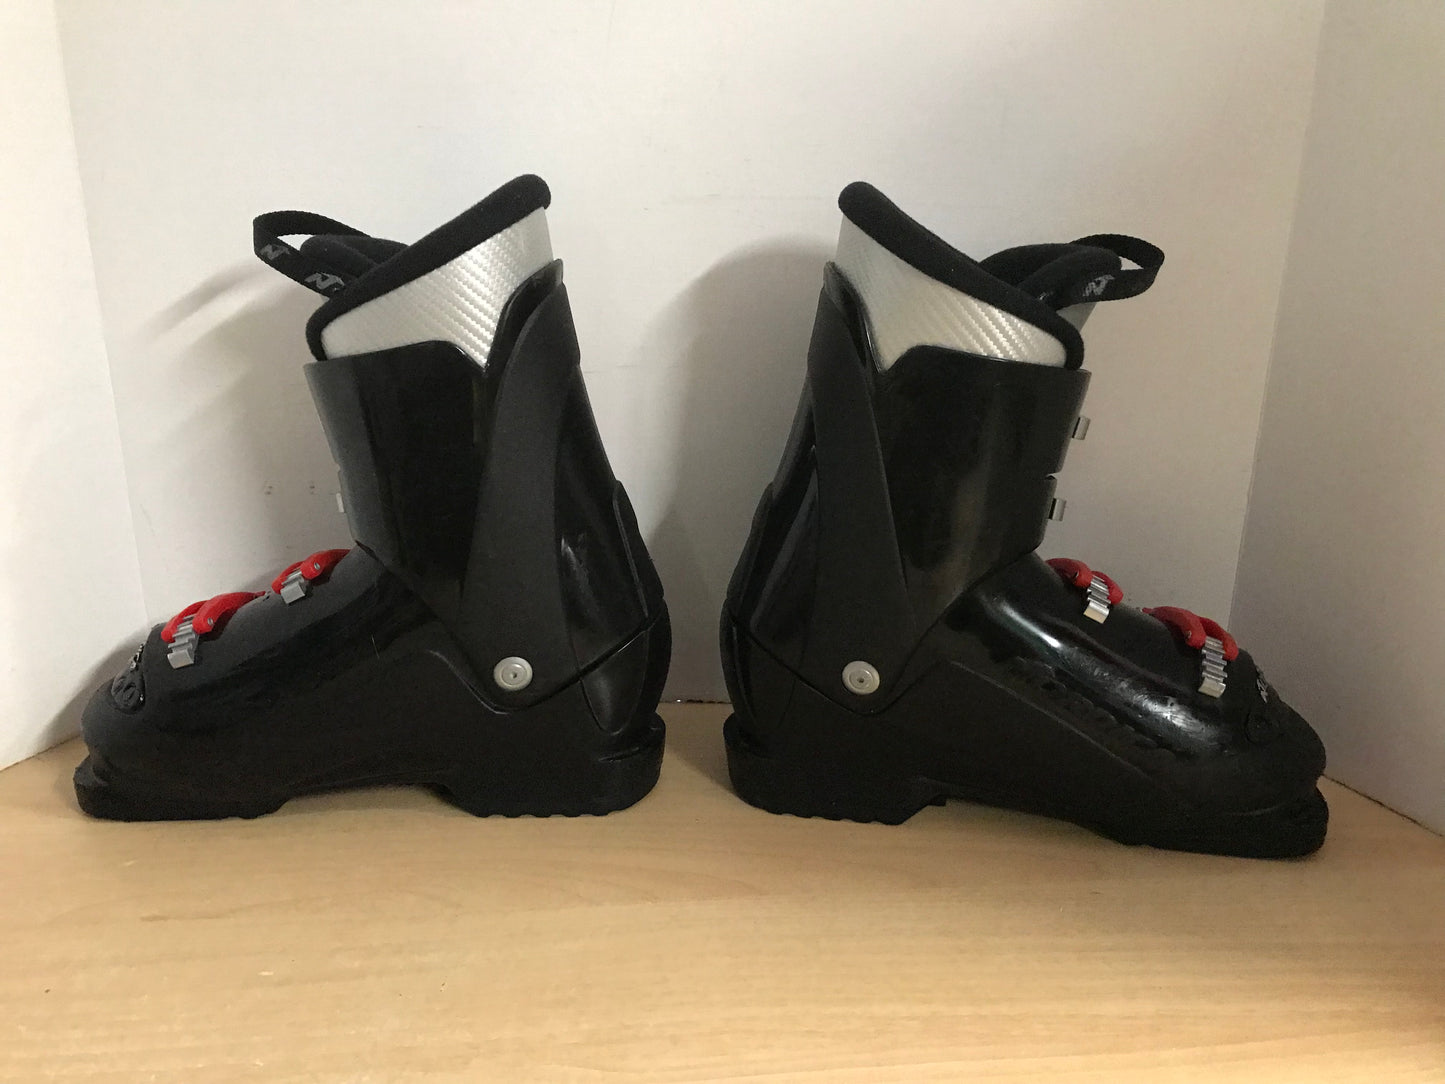 Ski Boots Mondo Size 25.0 Men's Size 7 Ladies Size 8 290 mm Nordica Black Red Excellent